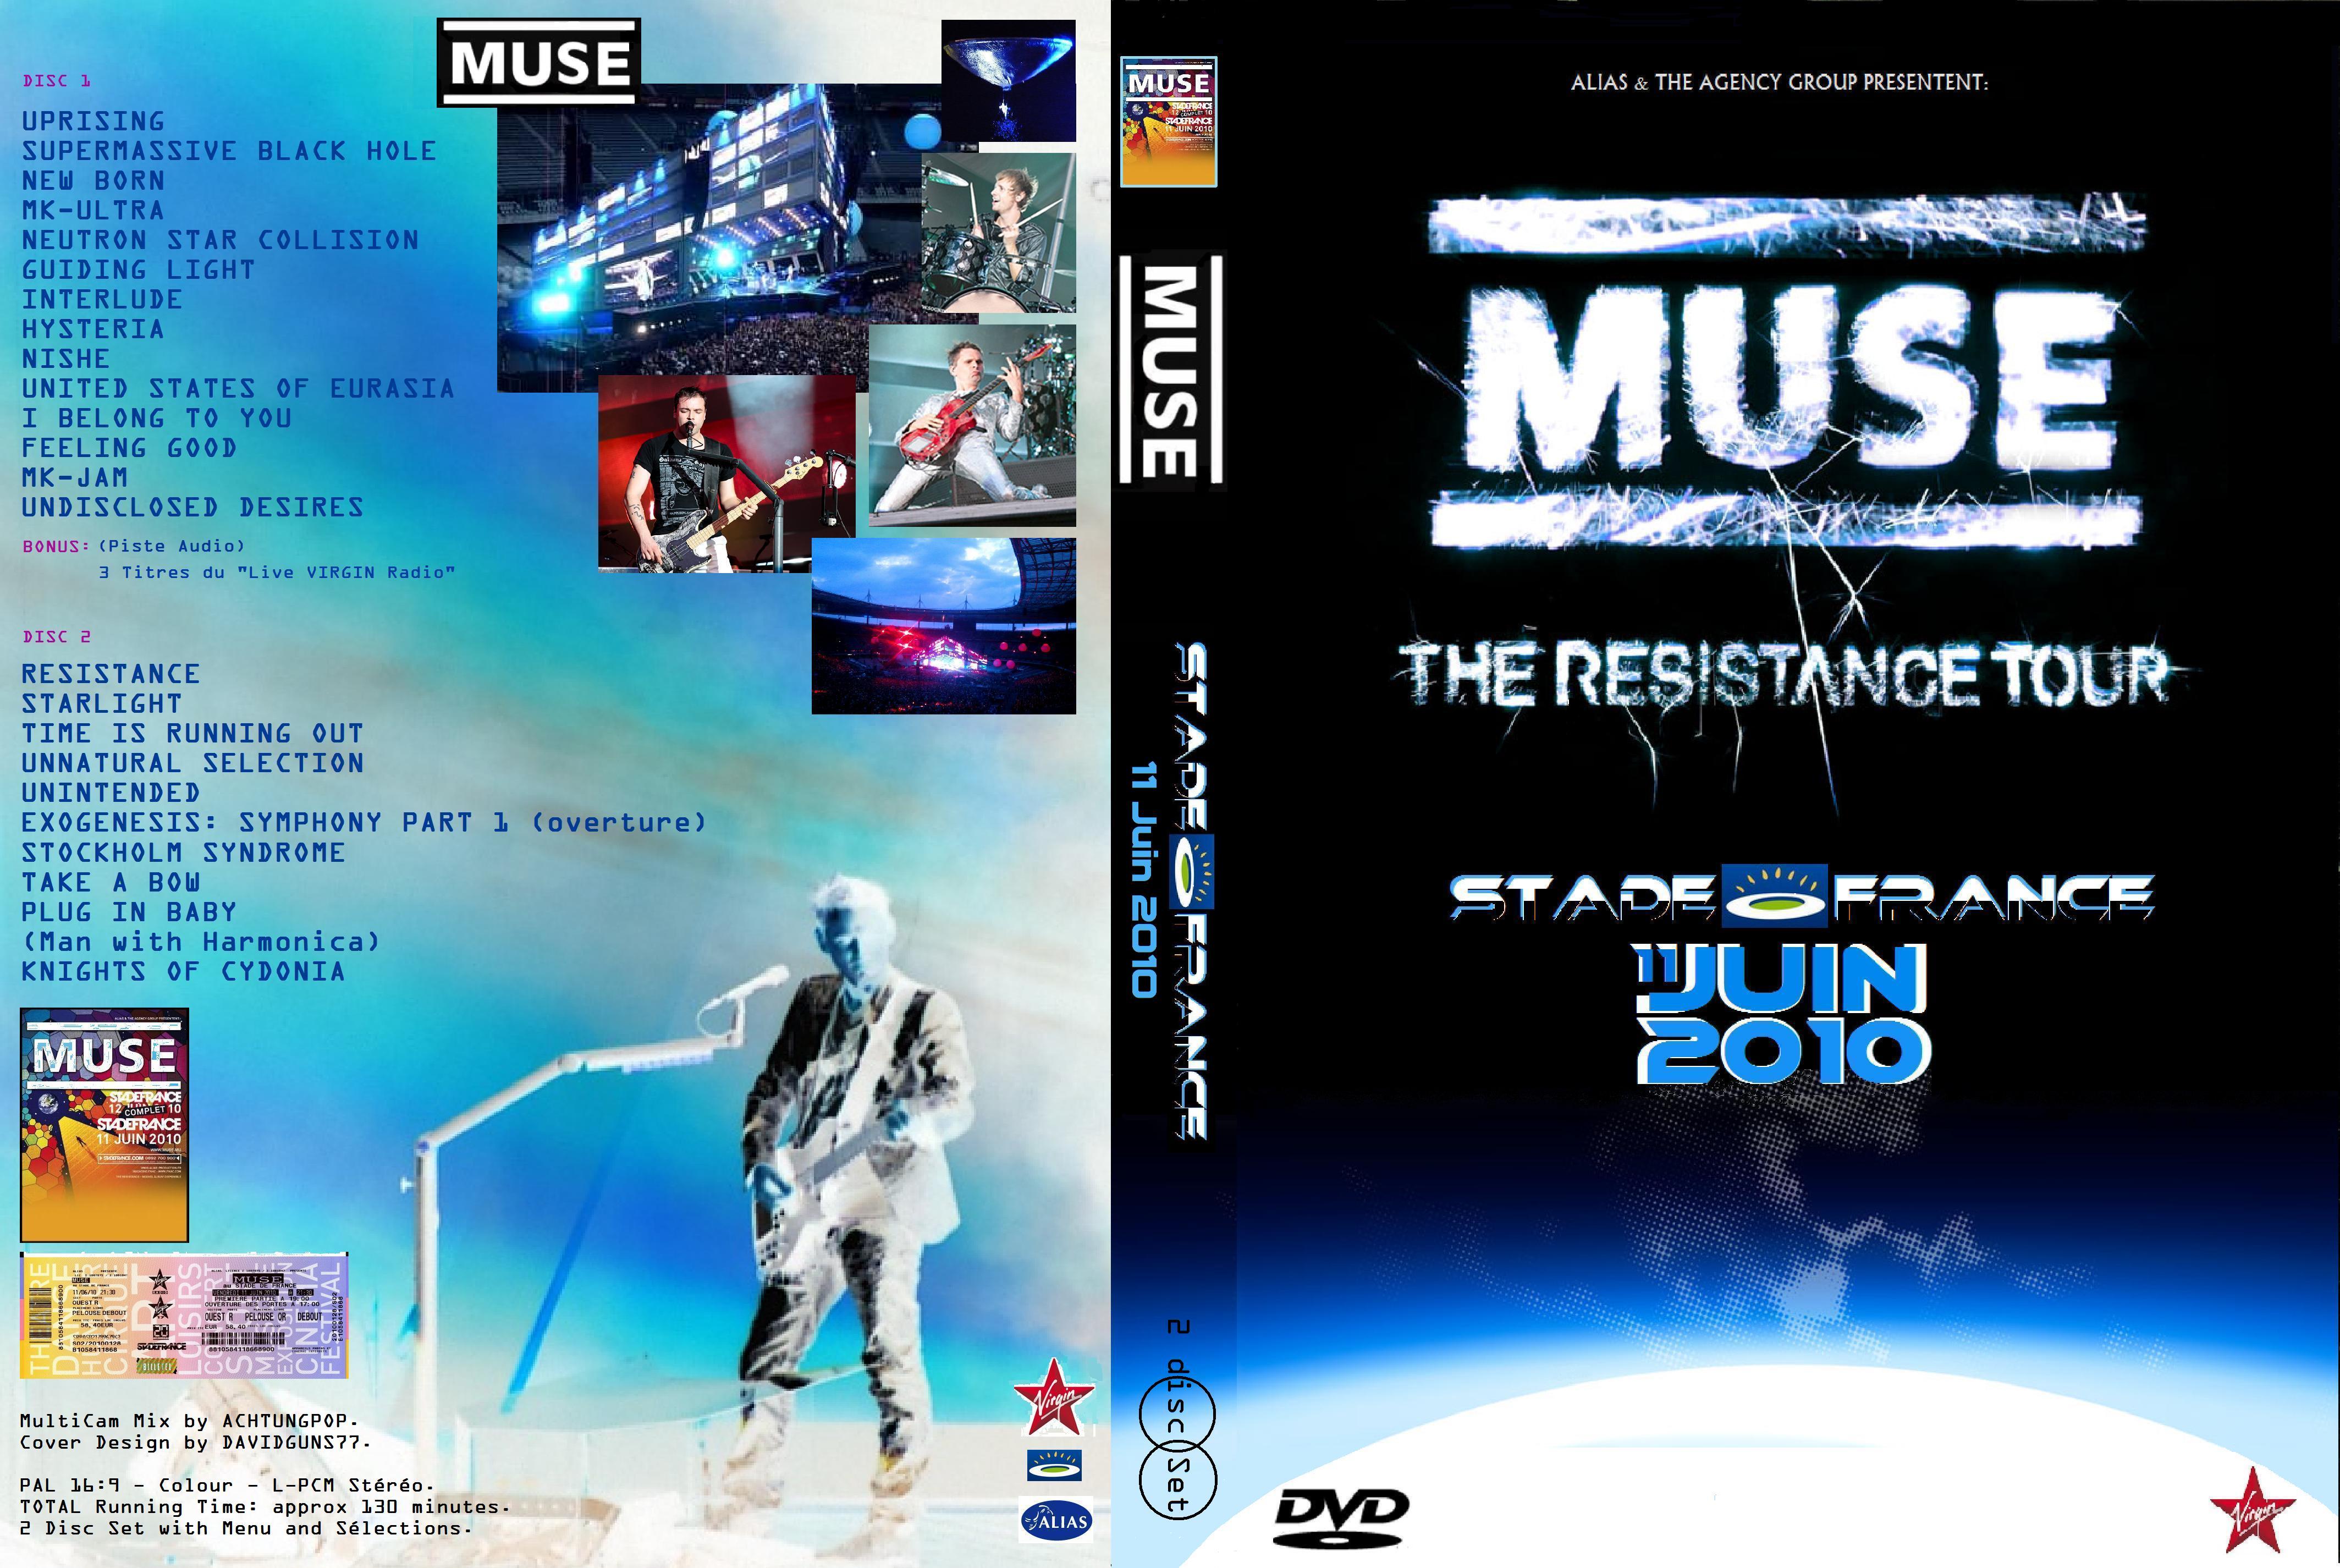 Jaquette DVD MUSE The resistance tour Stade de France 11 Juin 2010 custom